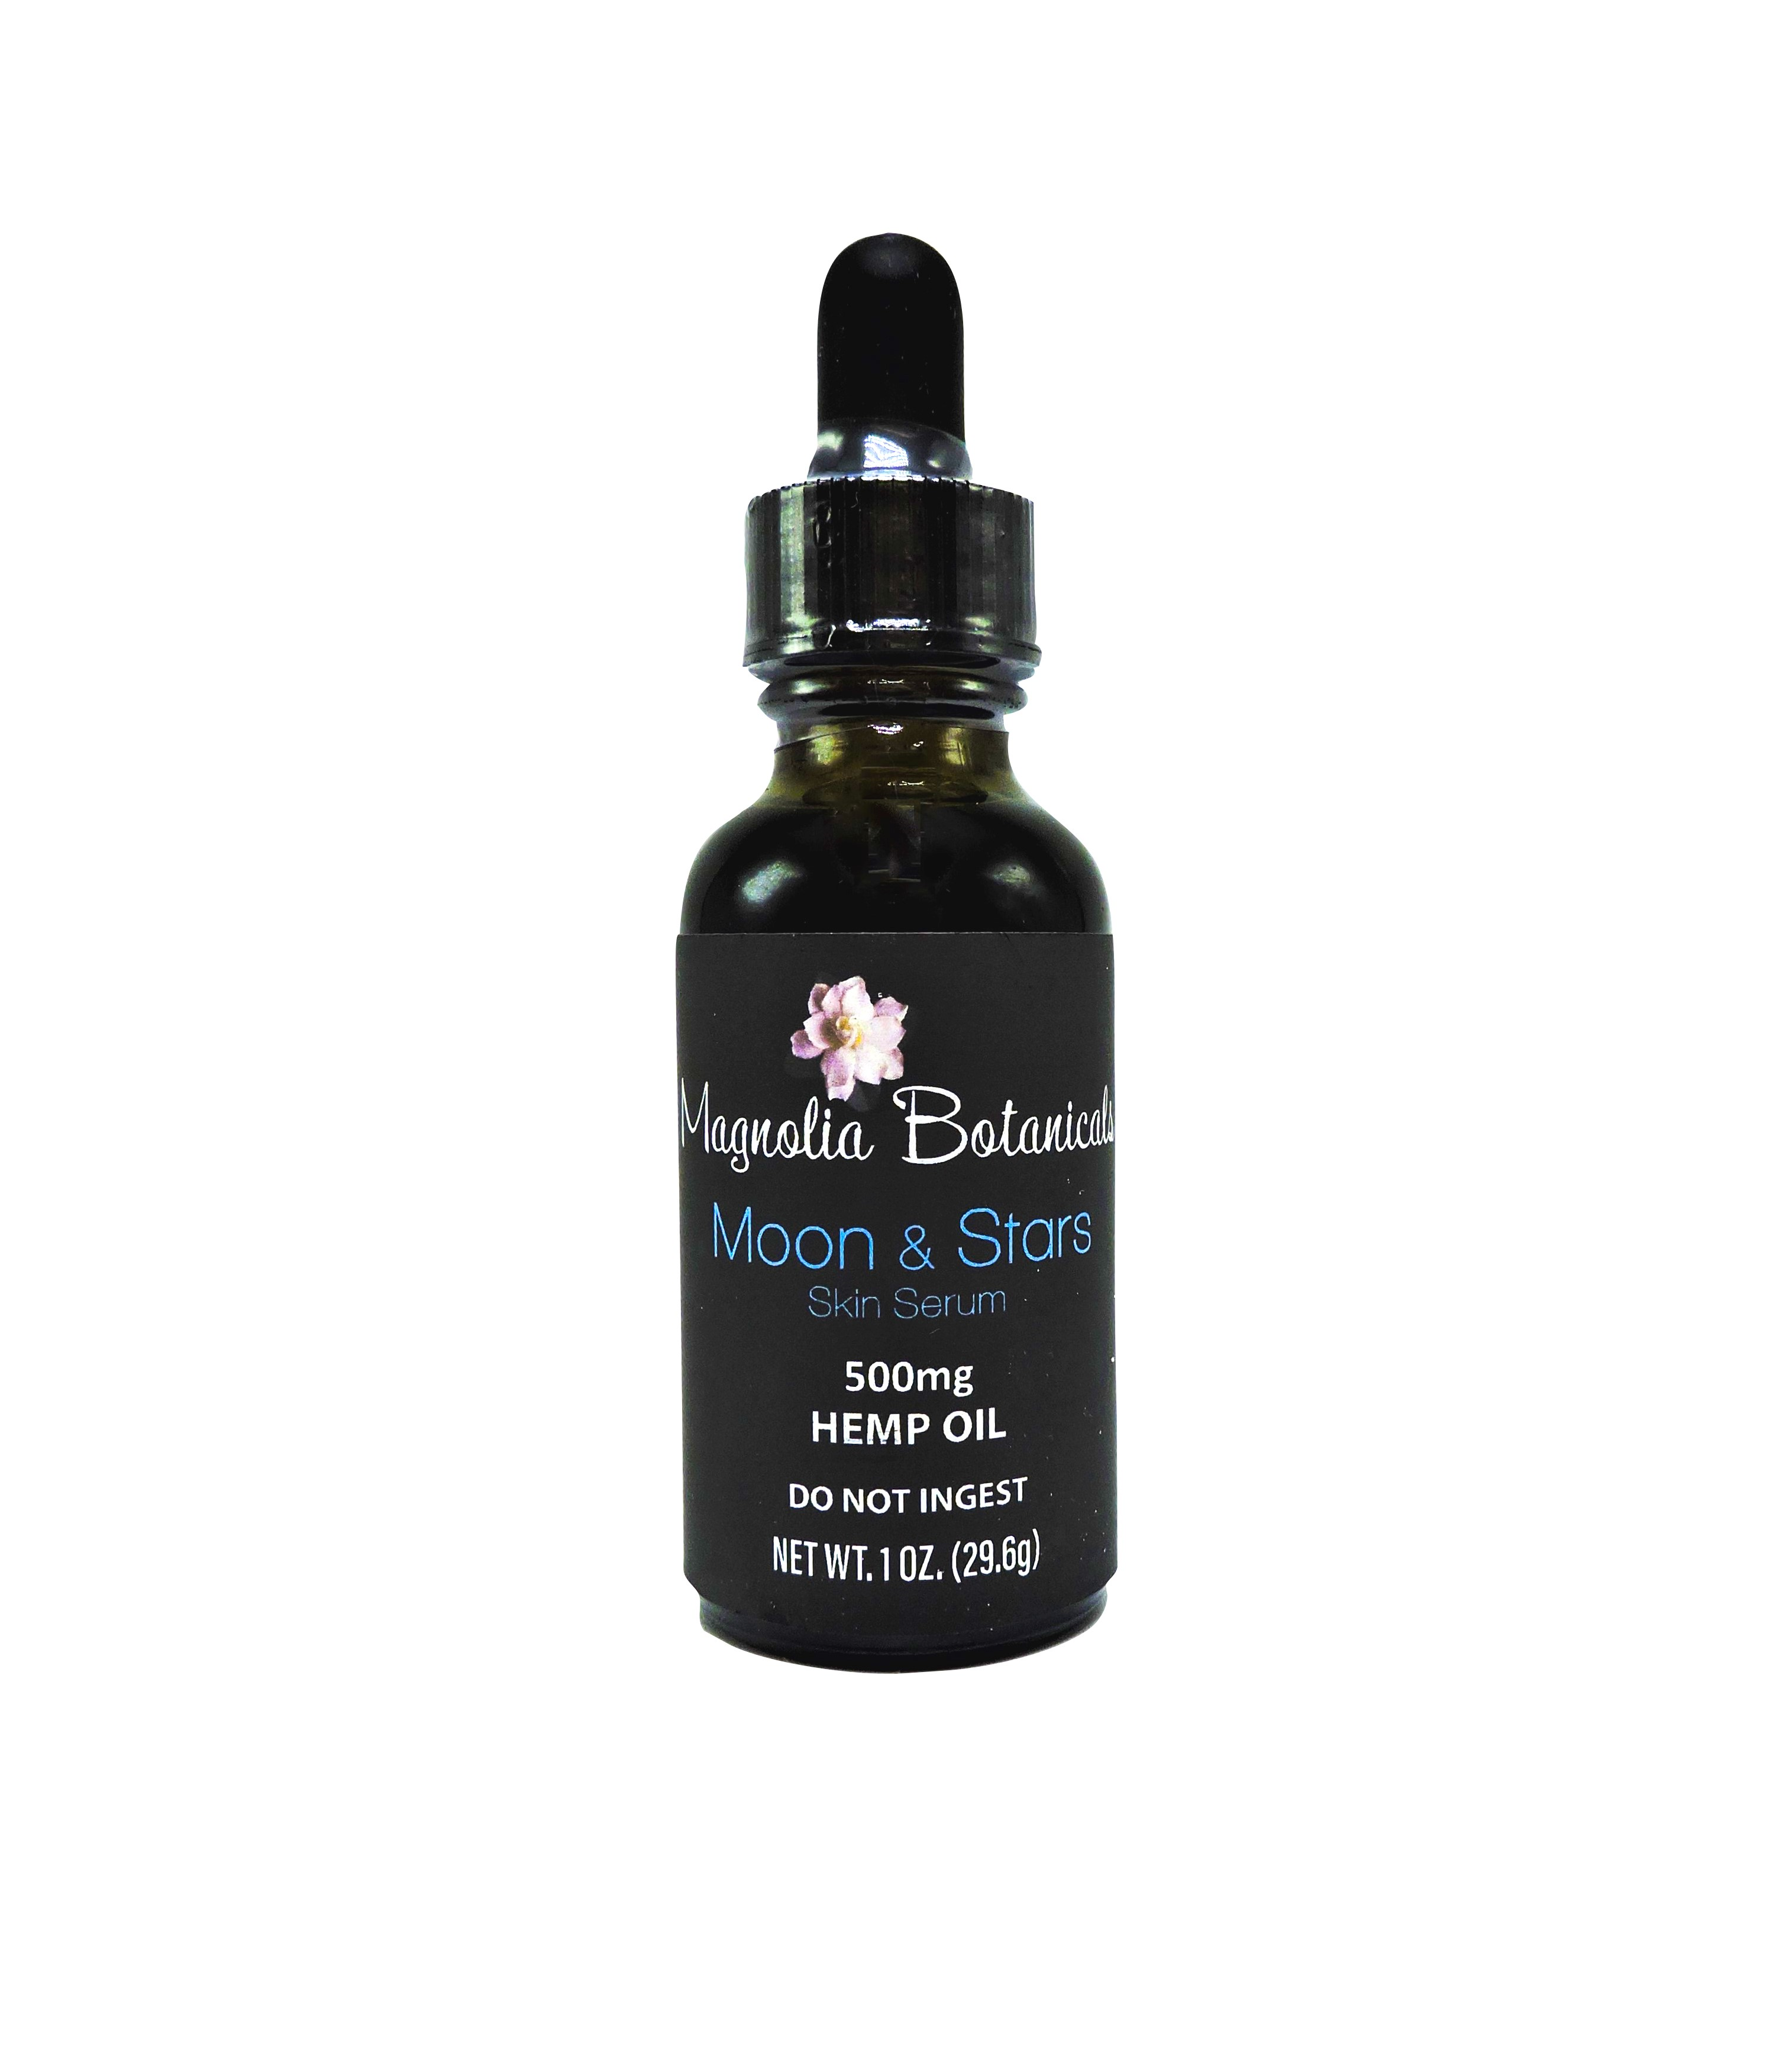 500mg Full Spectrum Hemp Extract Skin Serum - MOON & STARS - by Magnolia Botanicals